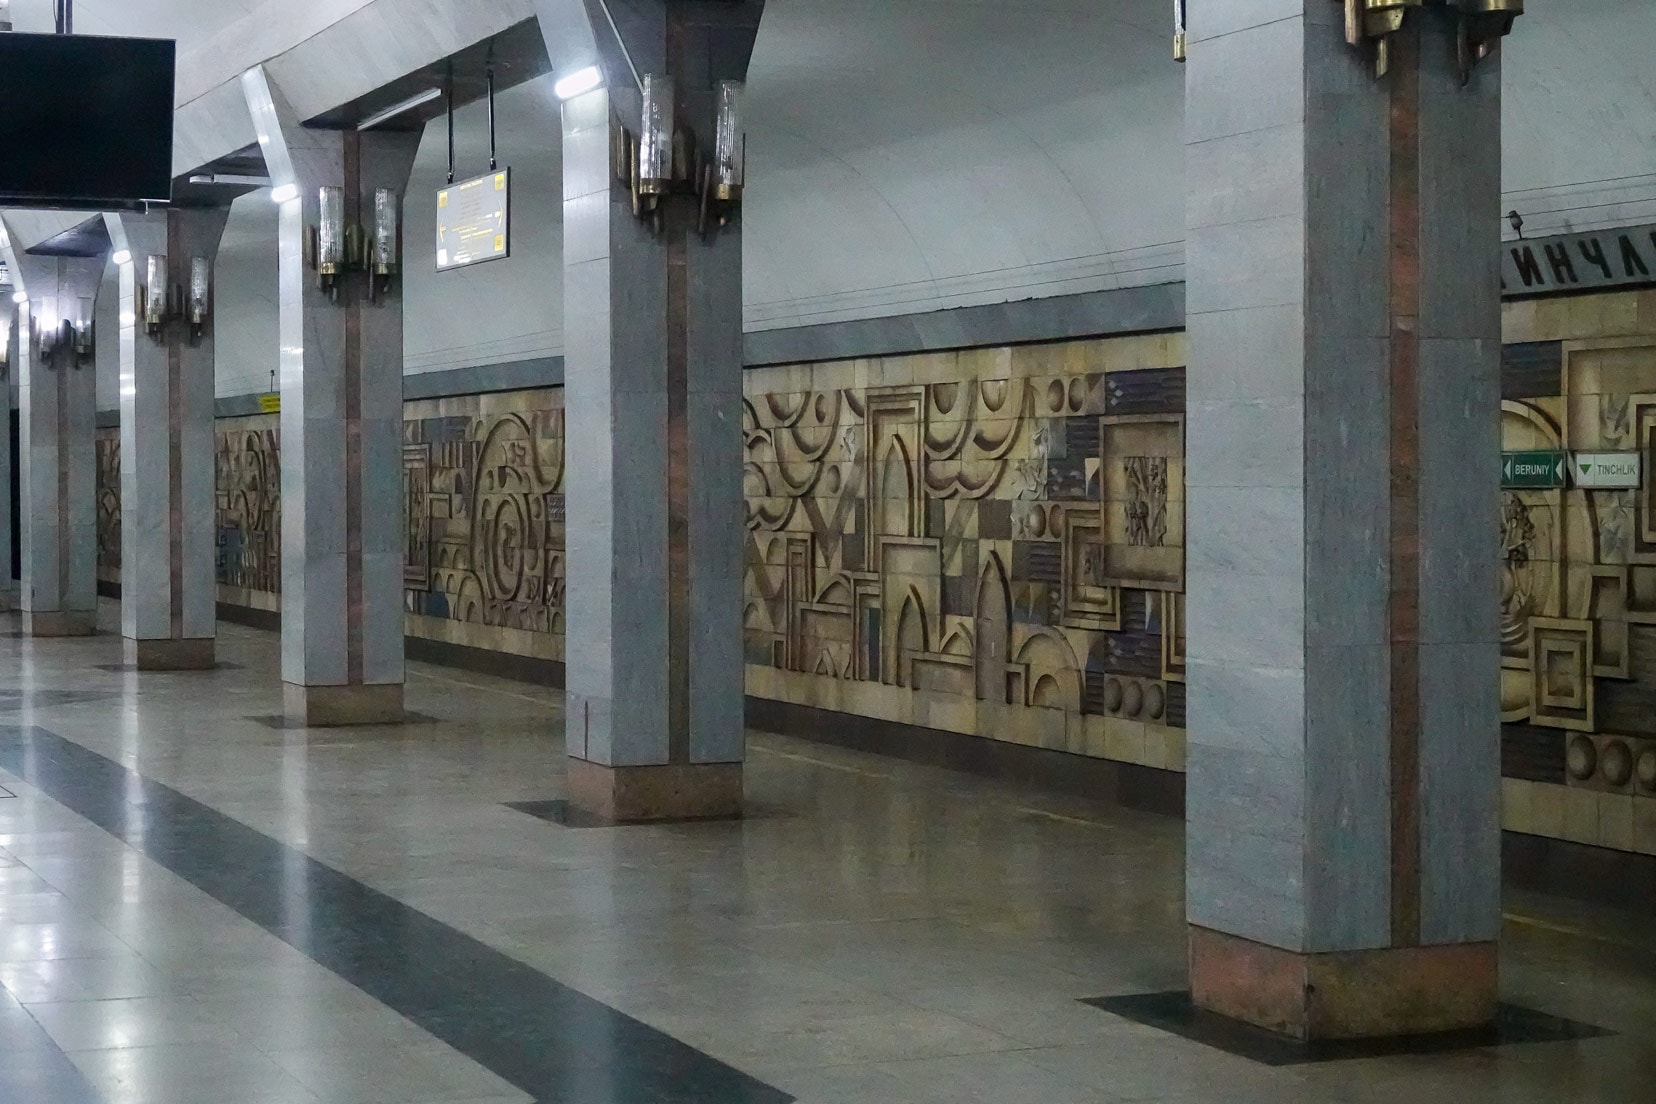 Tinchlik metro, Tashkent